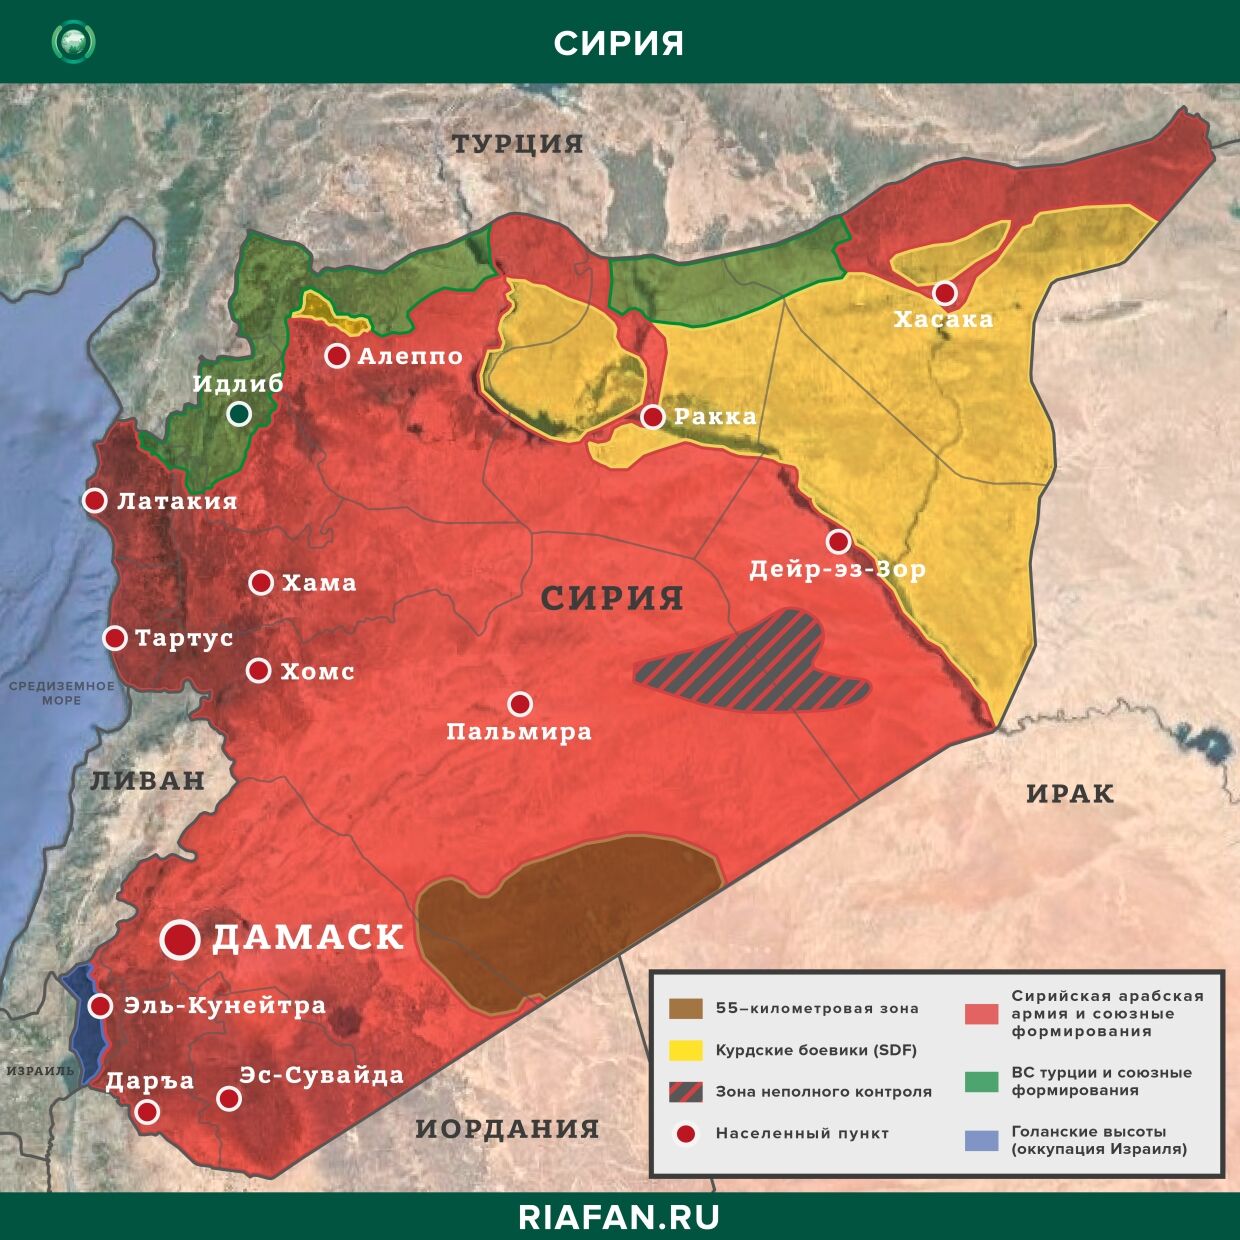 Nouvelles de Syrie 26 Peut 12.30: provocations de militants à Idlib, Дамаск отменяет комендантский час